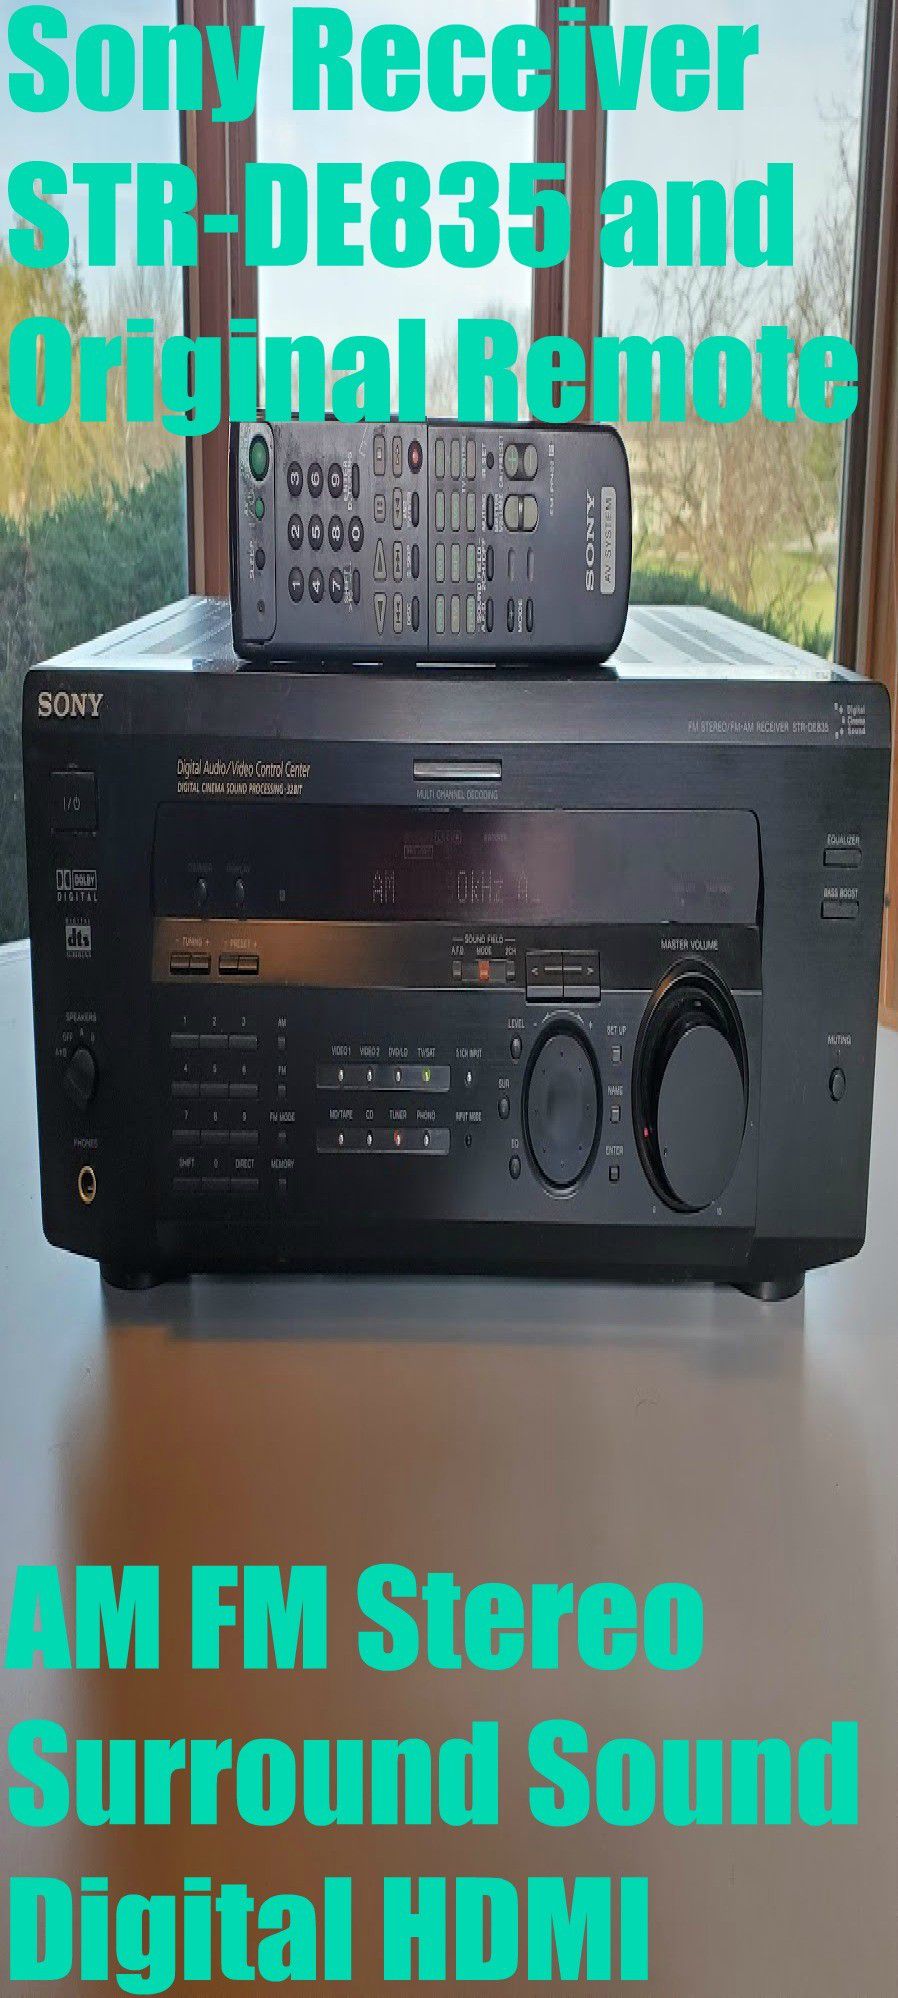 Sony STR-DE835 Receiver & Original Remote AM FM Stereo Surround Sound Digital HDMI